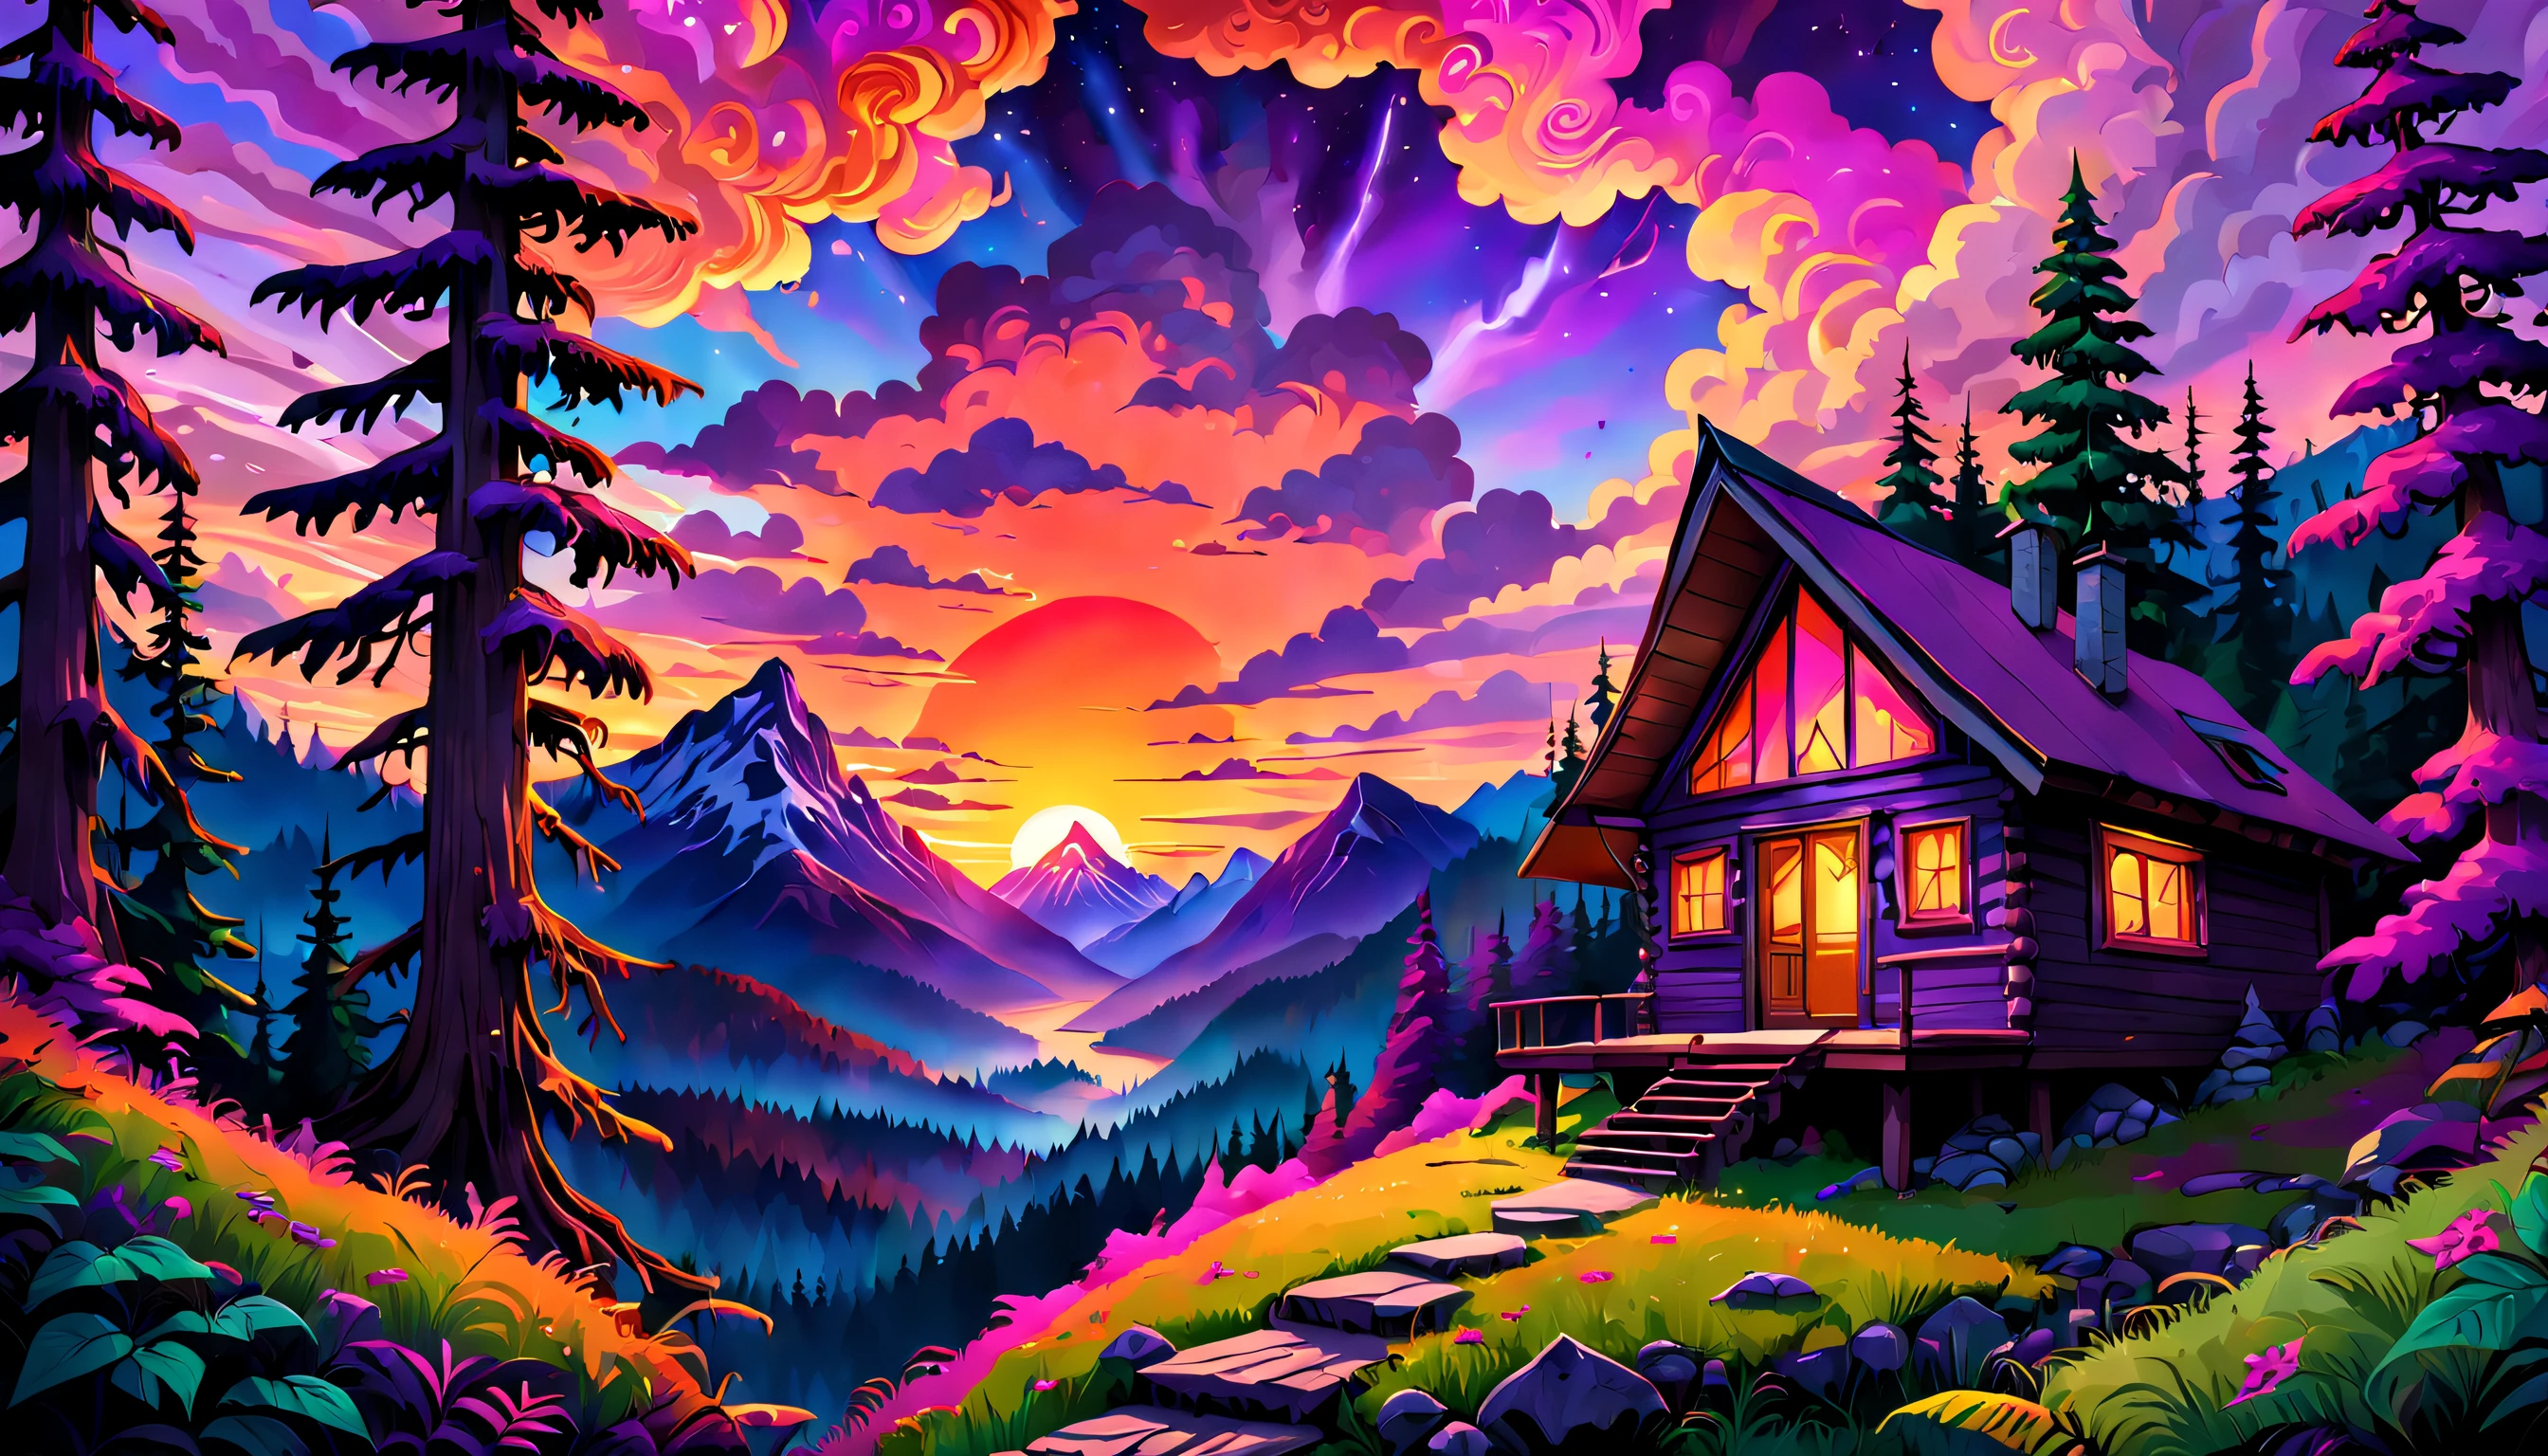 Misteriosa cabaña de montaña enclavada entre densas, bosques psicodélicos, con un impresionante cielo al atardecer que proyecta vibrantes, tonos cálidos de púrpura, rosa y naranja, creando una atmósfera de curiosidad e intriga.